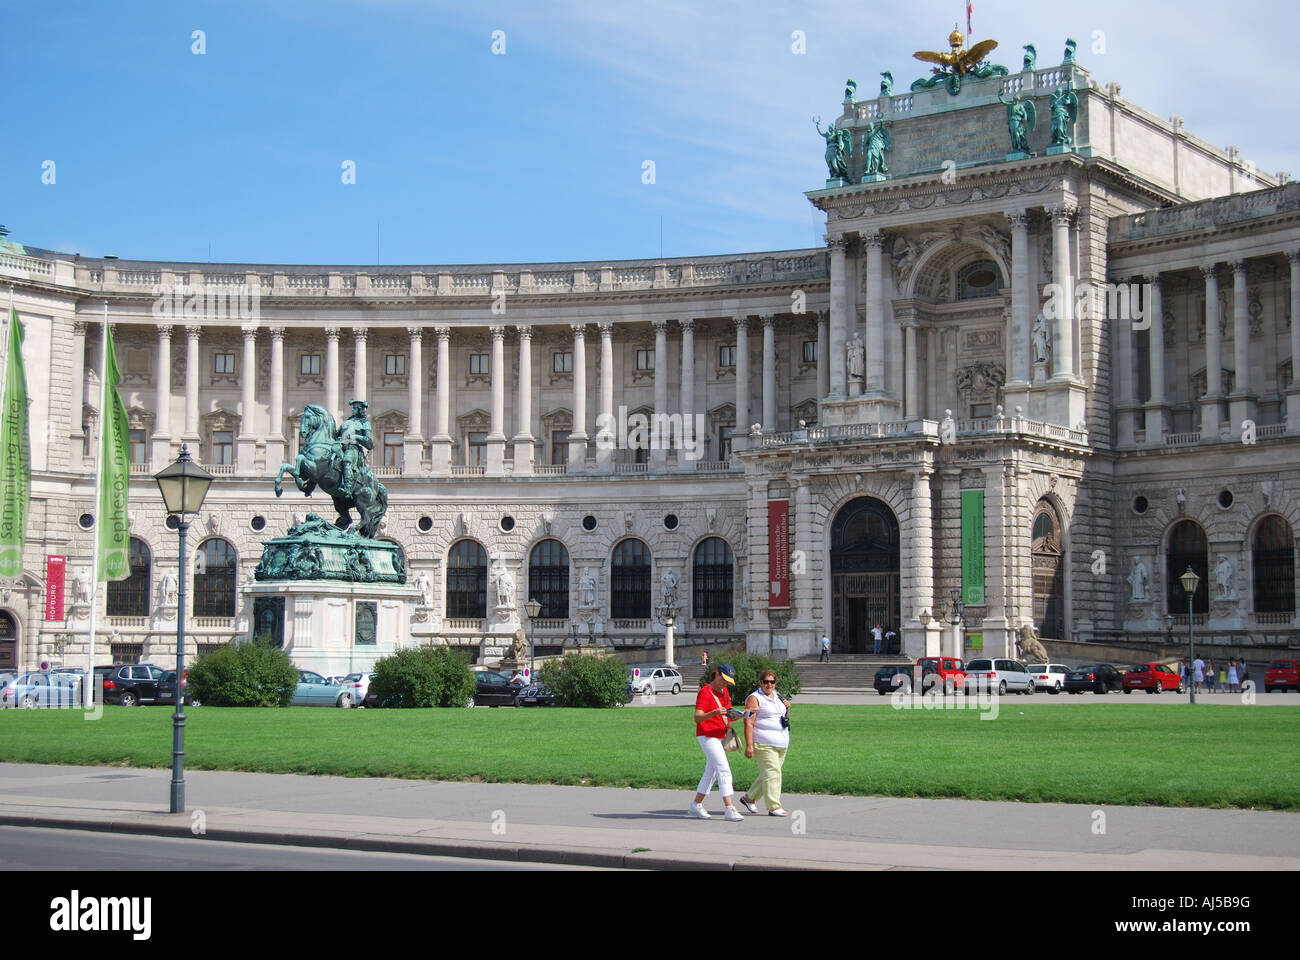 Hofburg Palace Complex, Heldenplatz, Vienna, Wein, Republic of Austria Stock Photo